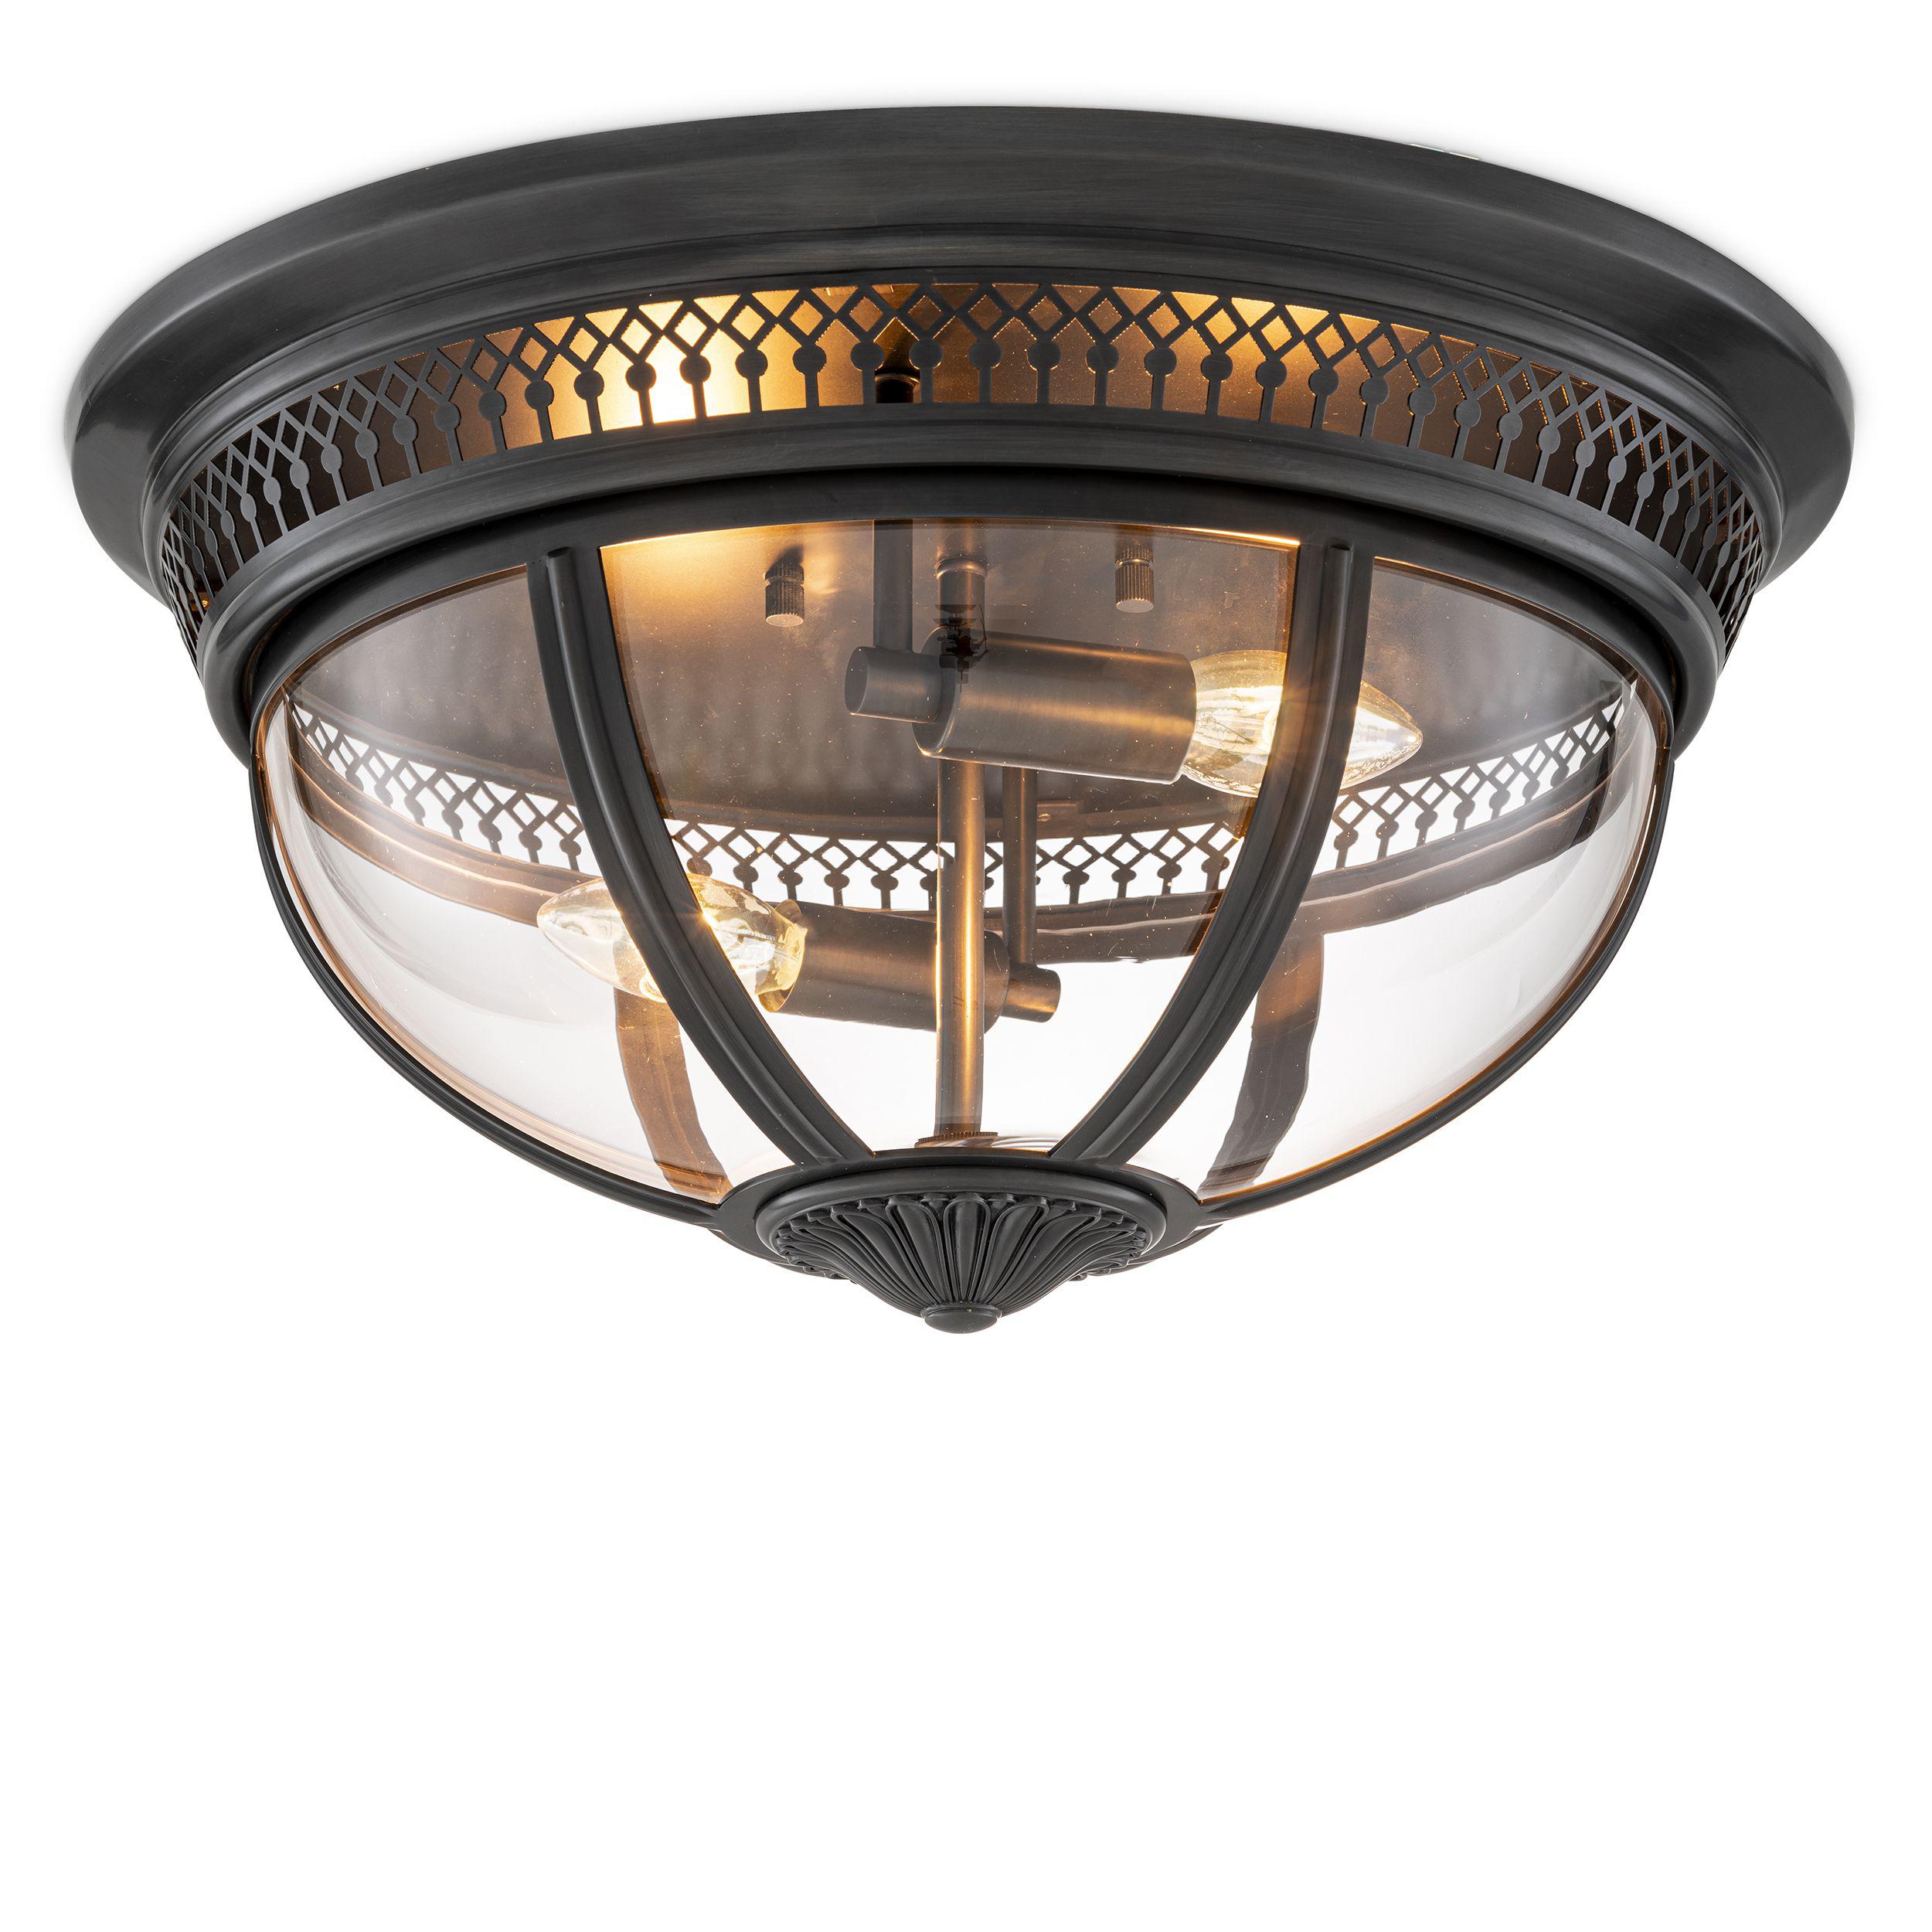 Купить Накладной светильник Ceiling Lamp Residential в интернет-магазине roooms.ru